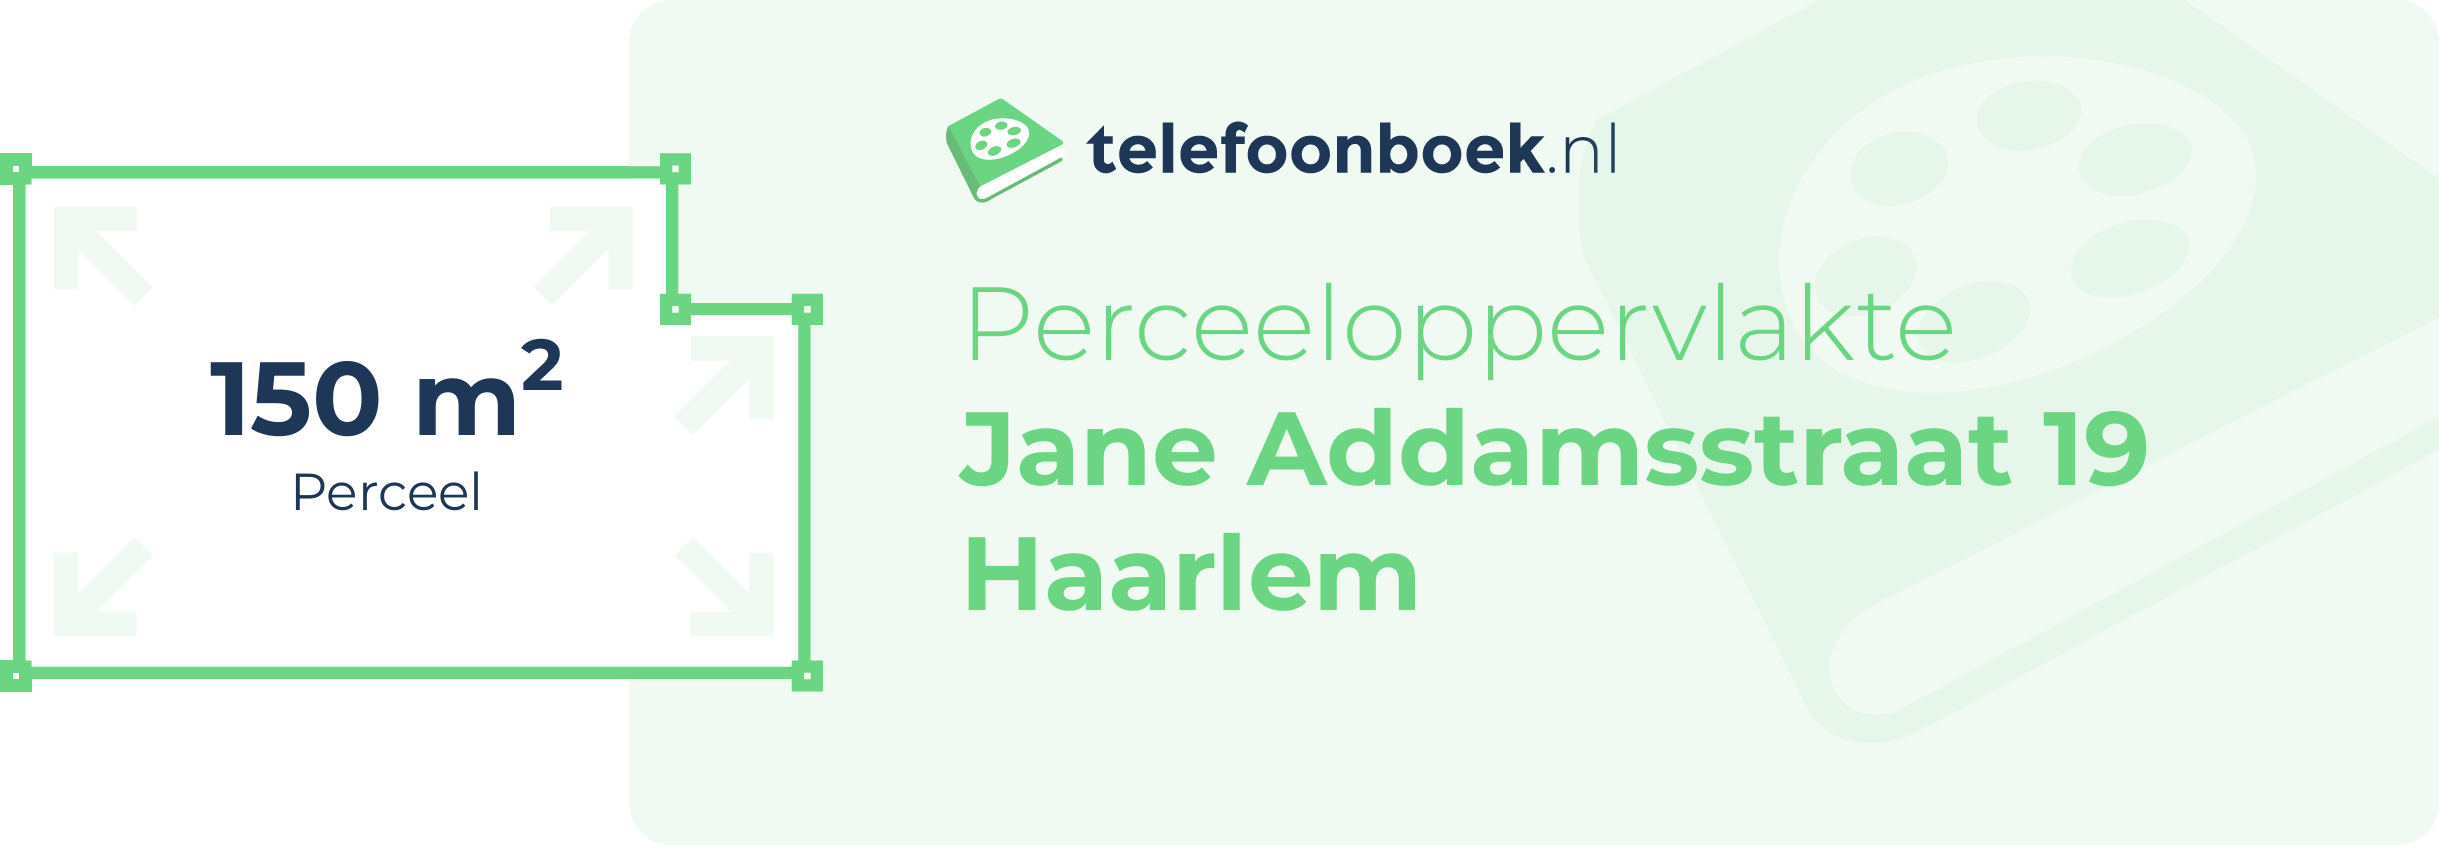 Perceeloppervlakte Jane Addamsstraat 19 Haarlem